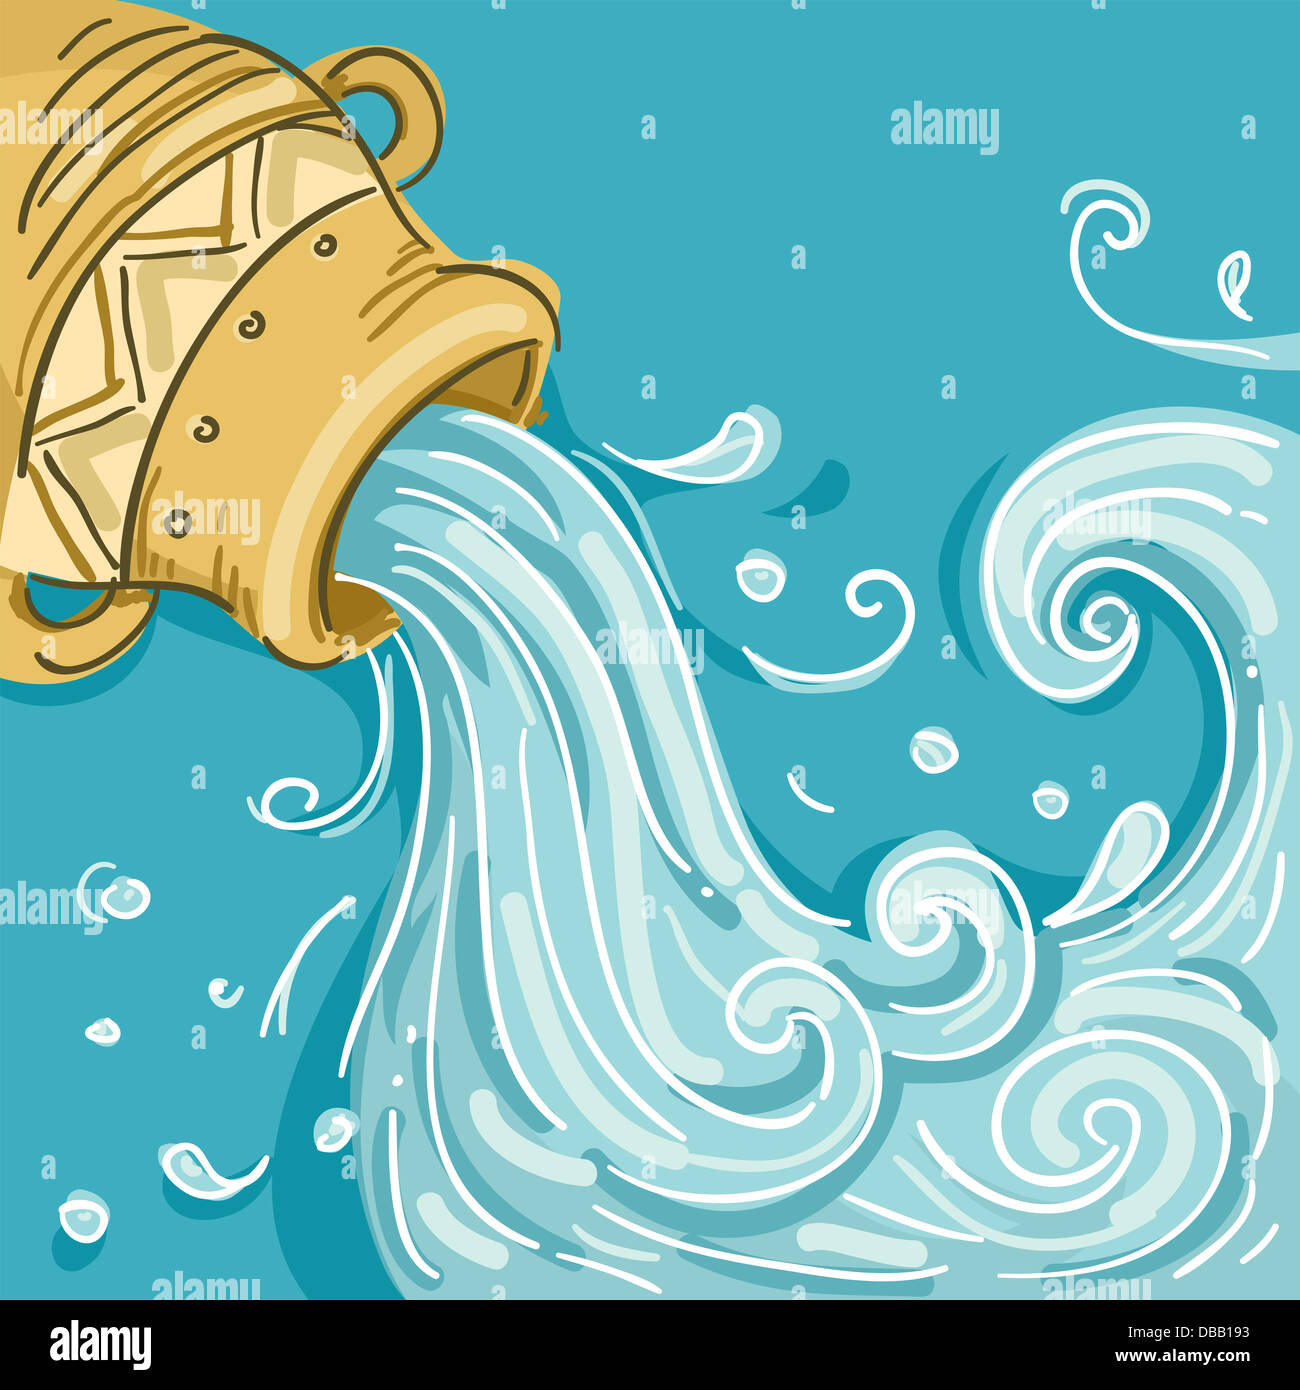 Ilustración del agua que sale del tarro en Acuario Design Foto de stock